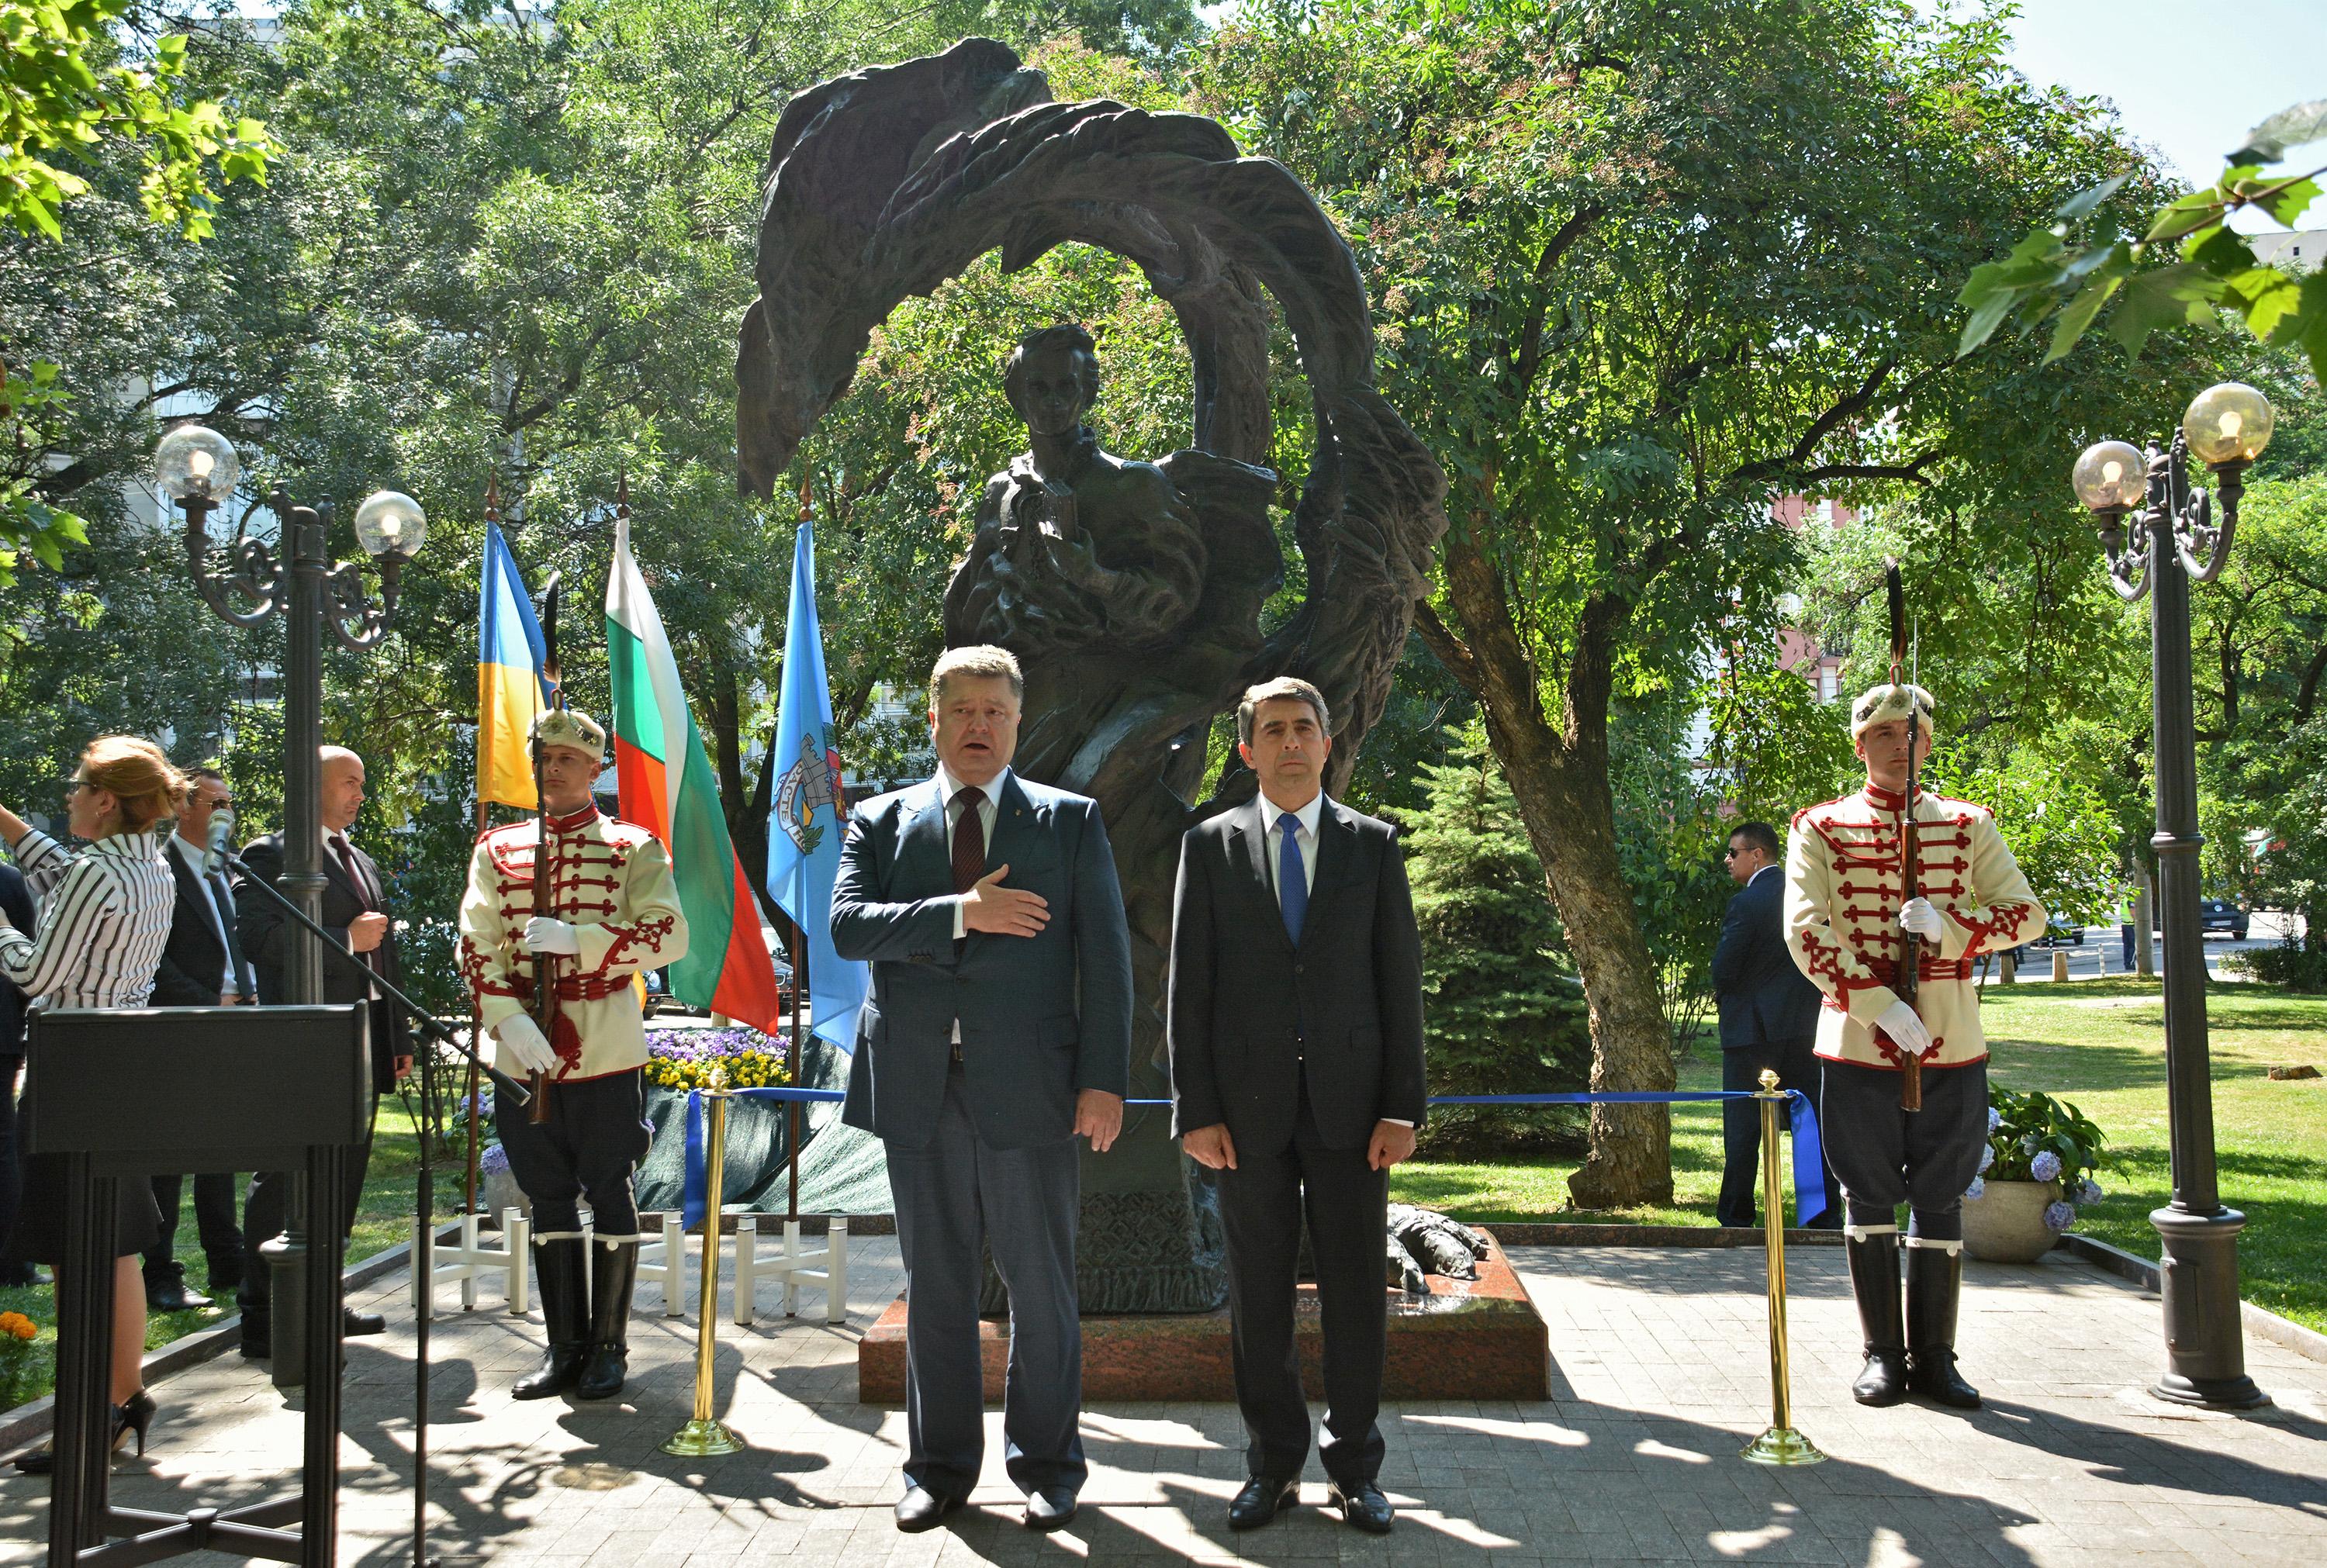 Откриването на паметника на Тарас шевченко в София